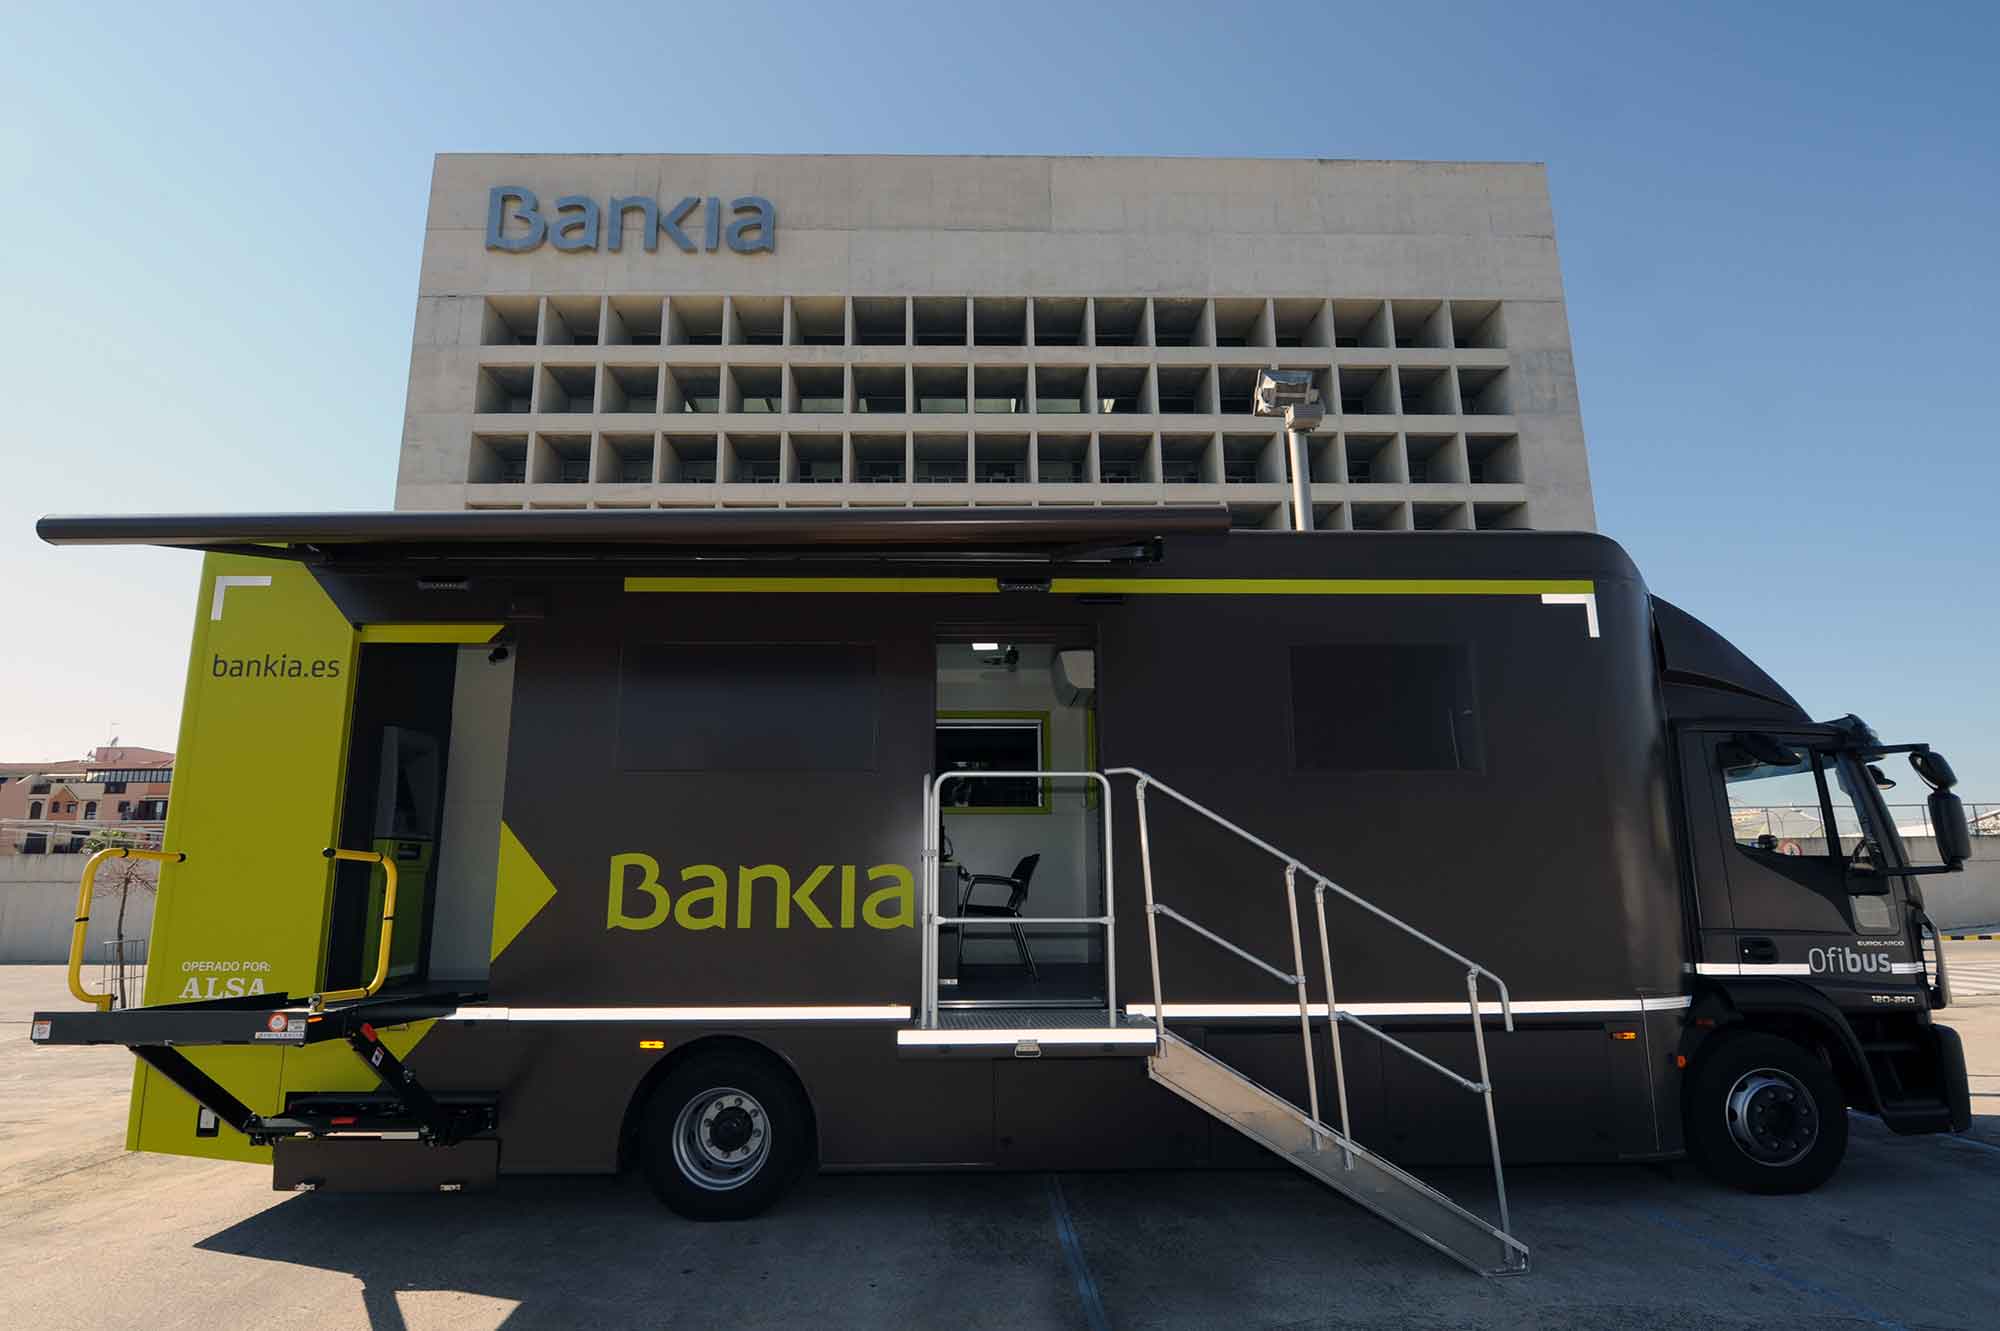 Los 12 ofibuses de Bankia dan servicio a 373 pequeños municipios en riesgo de exclusión financiera